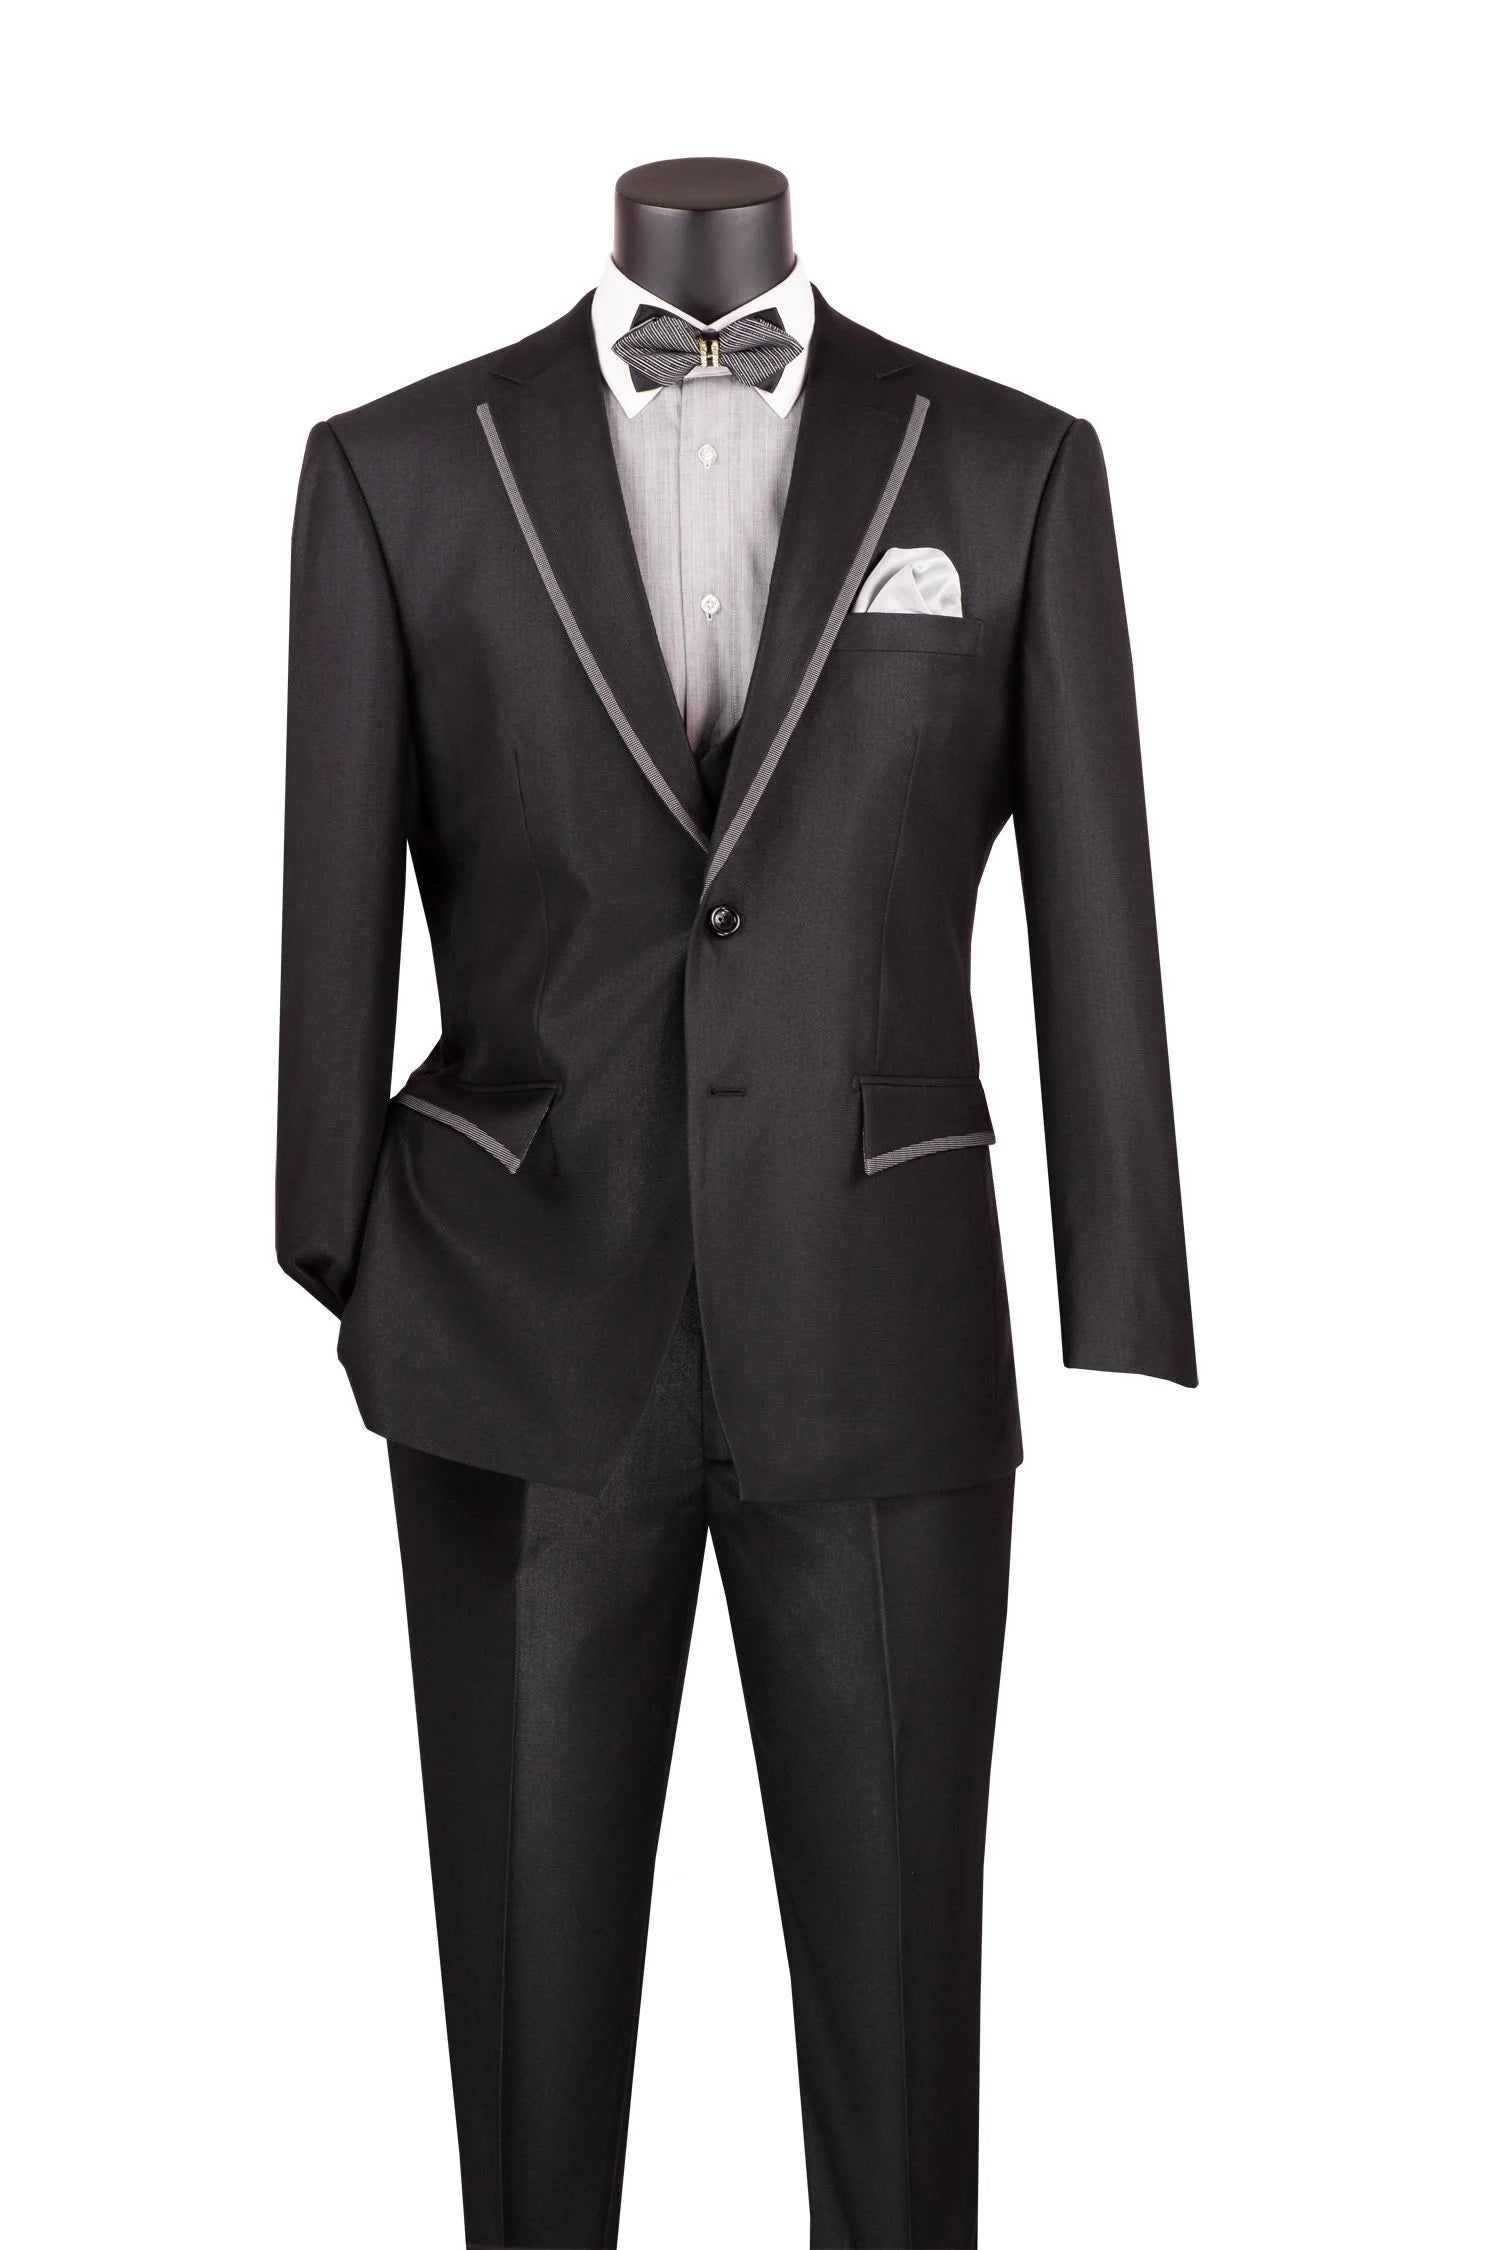 Vinci Men's 3 Piece Modern Fit Suit Tone-on Tone Accents